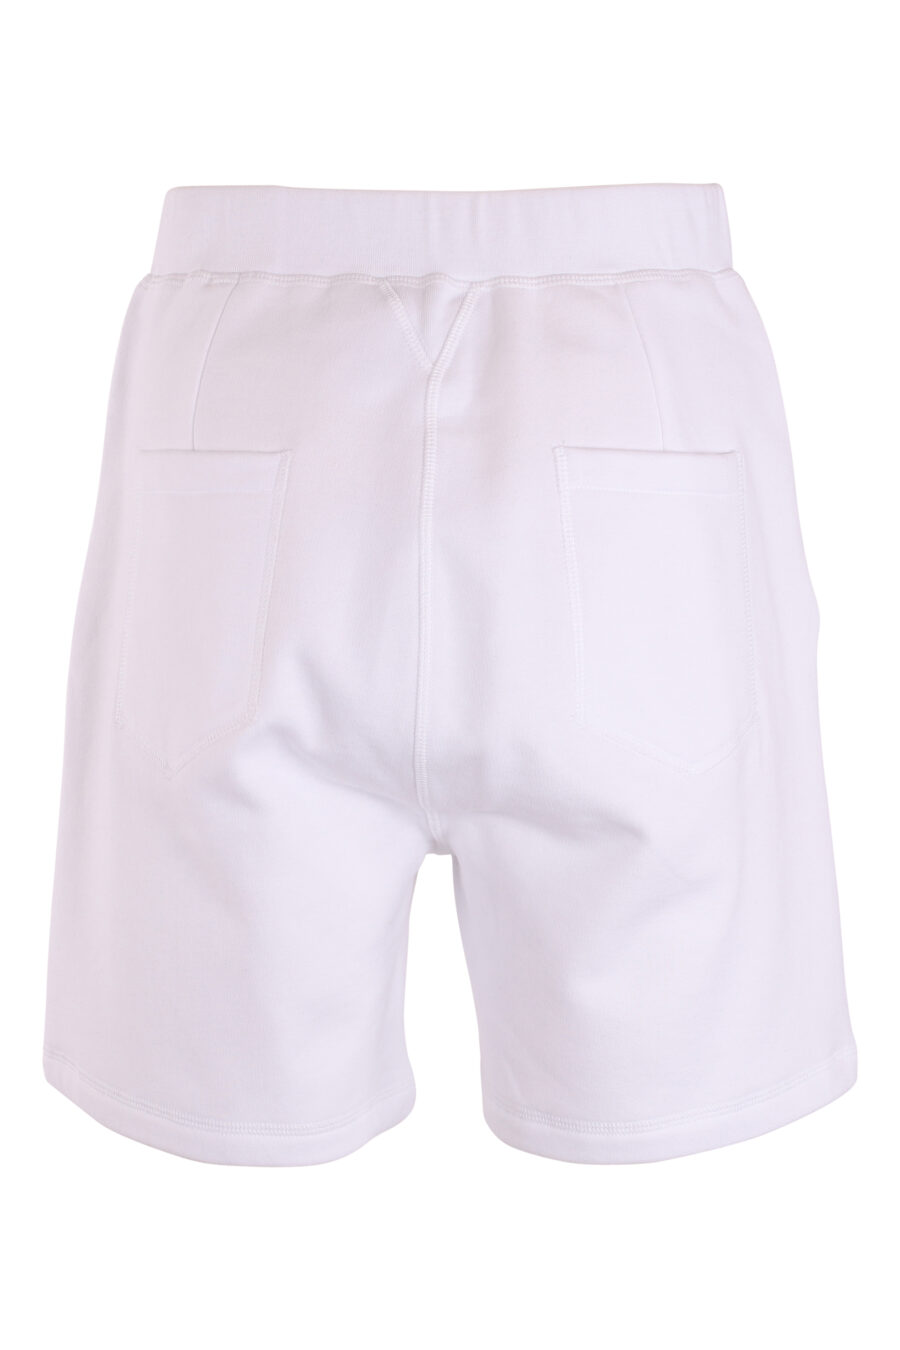 Pantalón de chándal corto blanco con doble logo lateral - IMG 8981